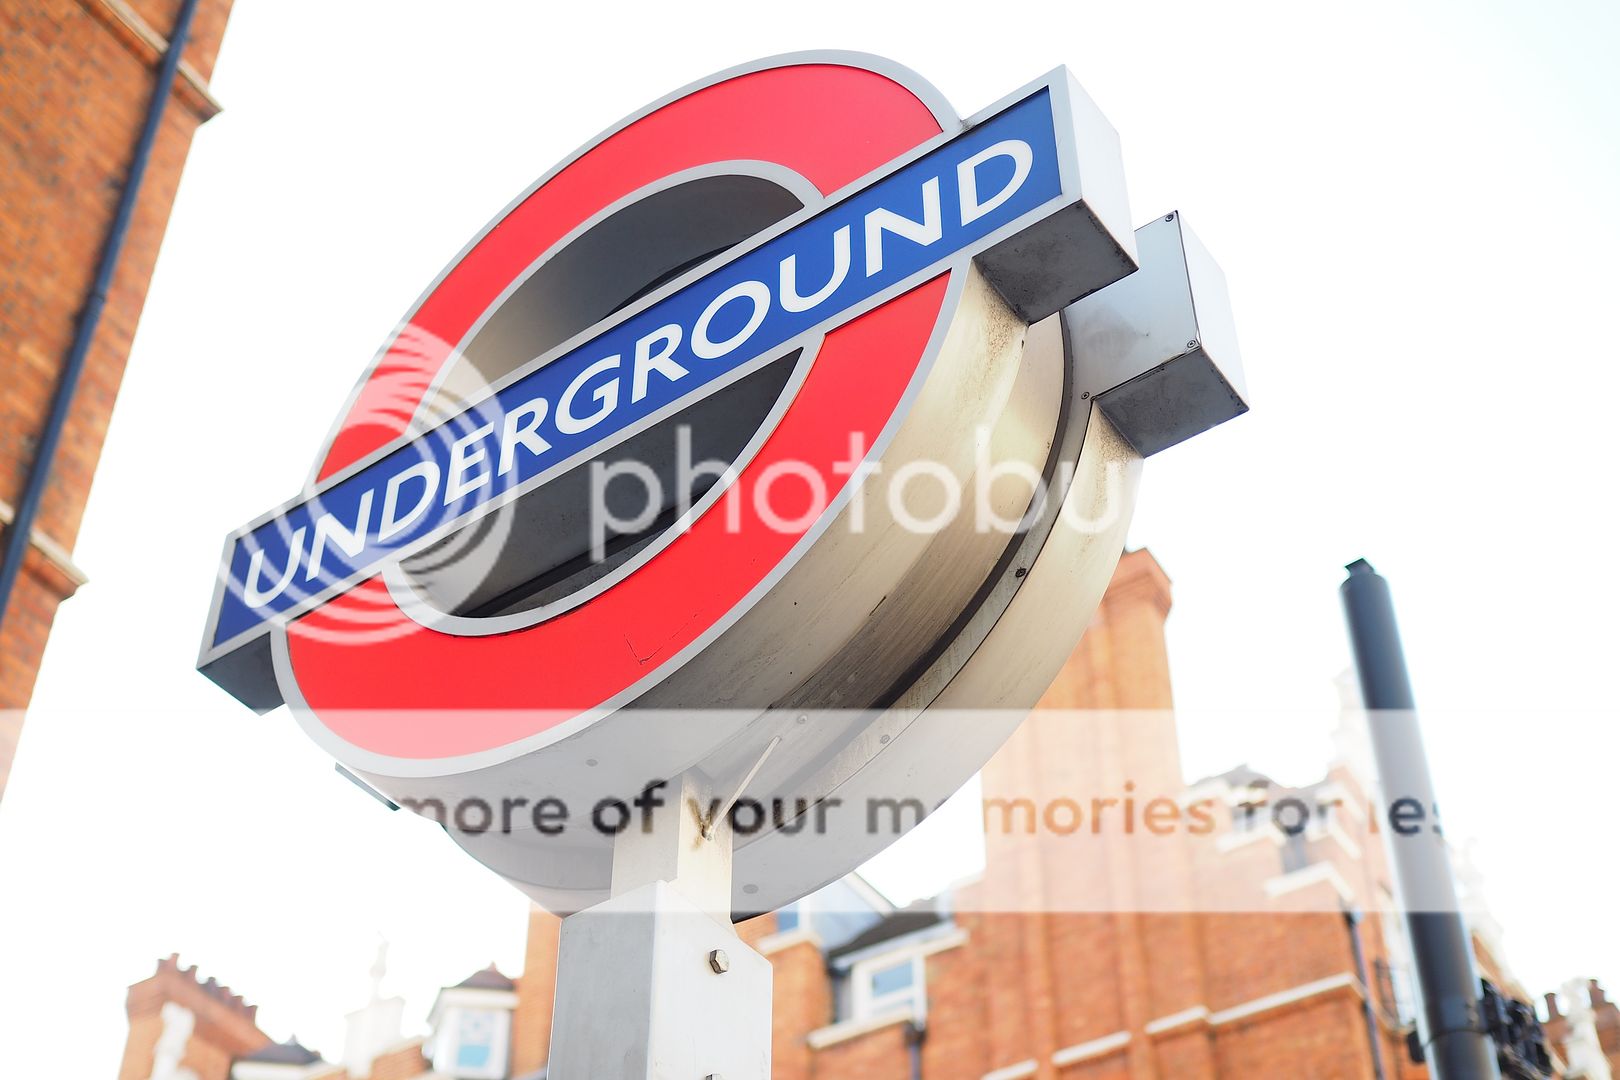  photo london underground uk .jpeg